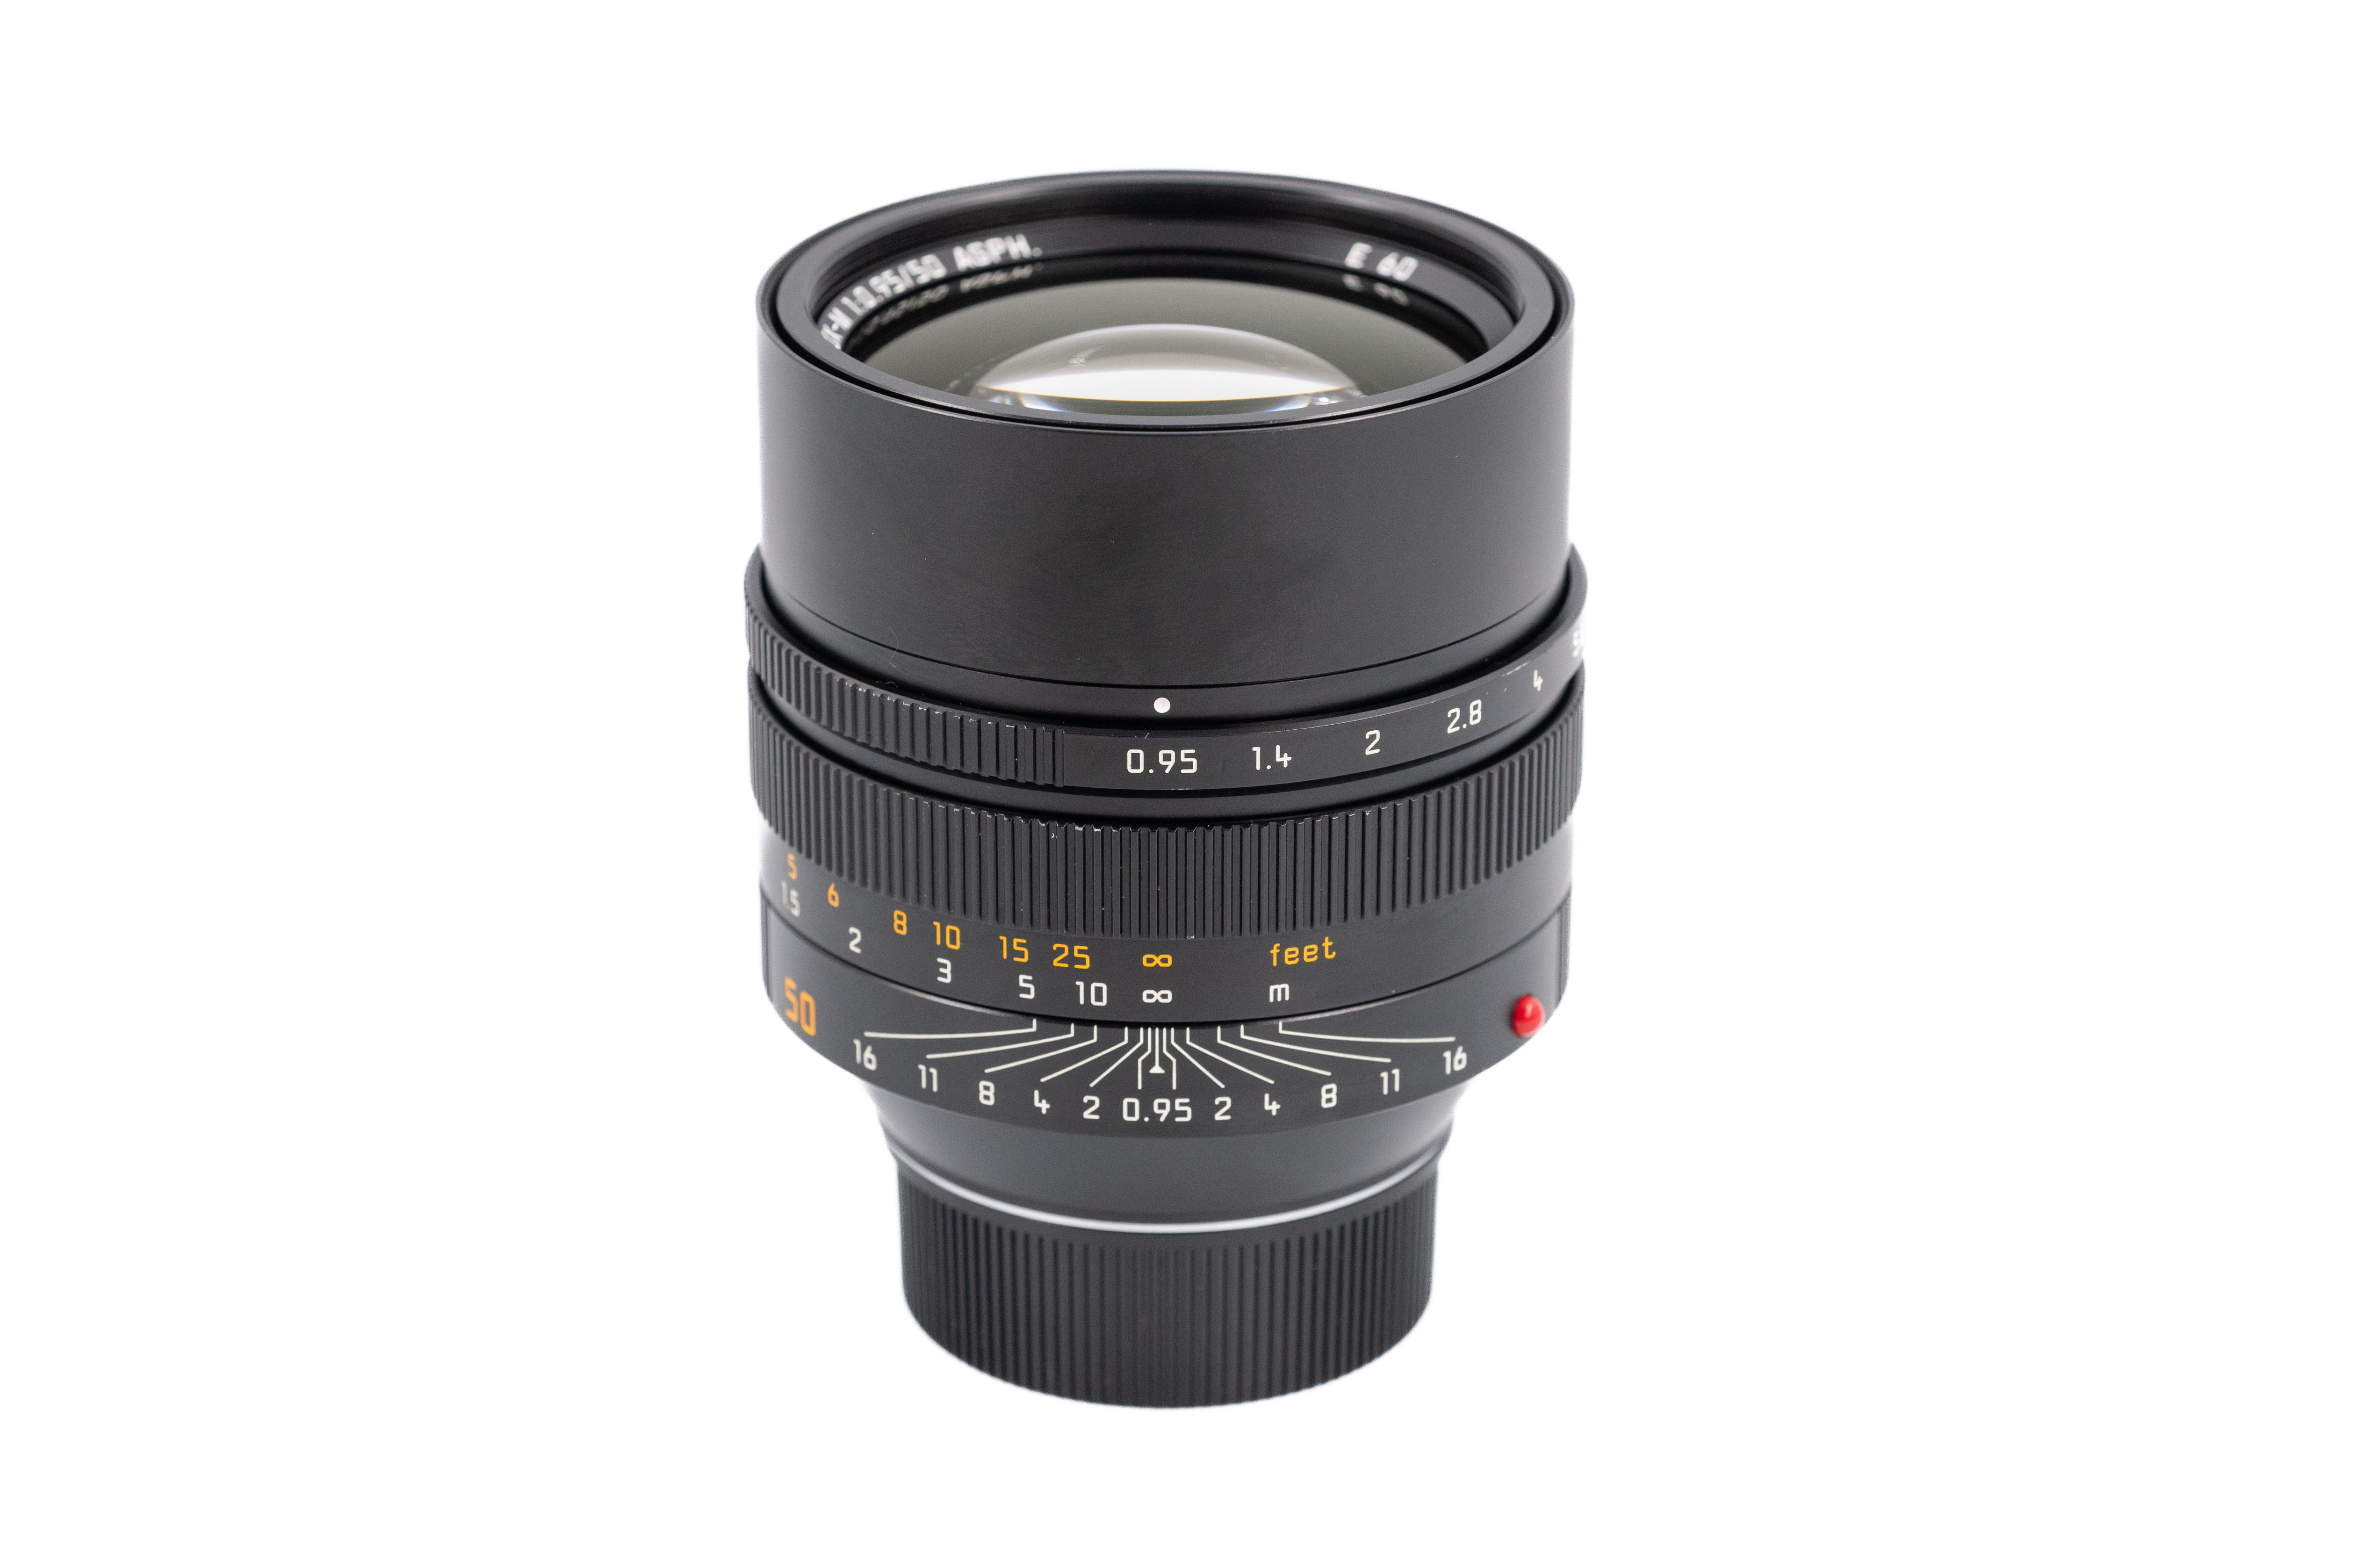 Leica Noctilux-M 50mm f/0.95 ASPH 11602